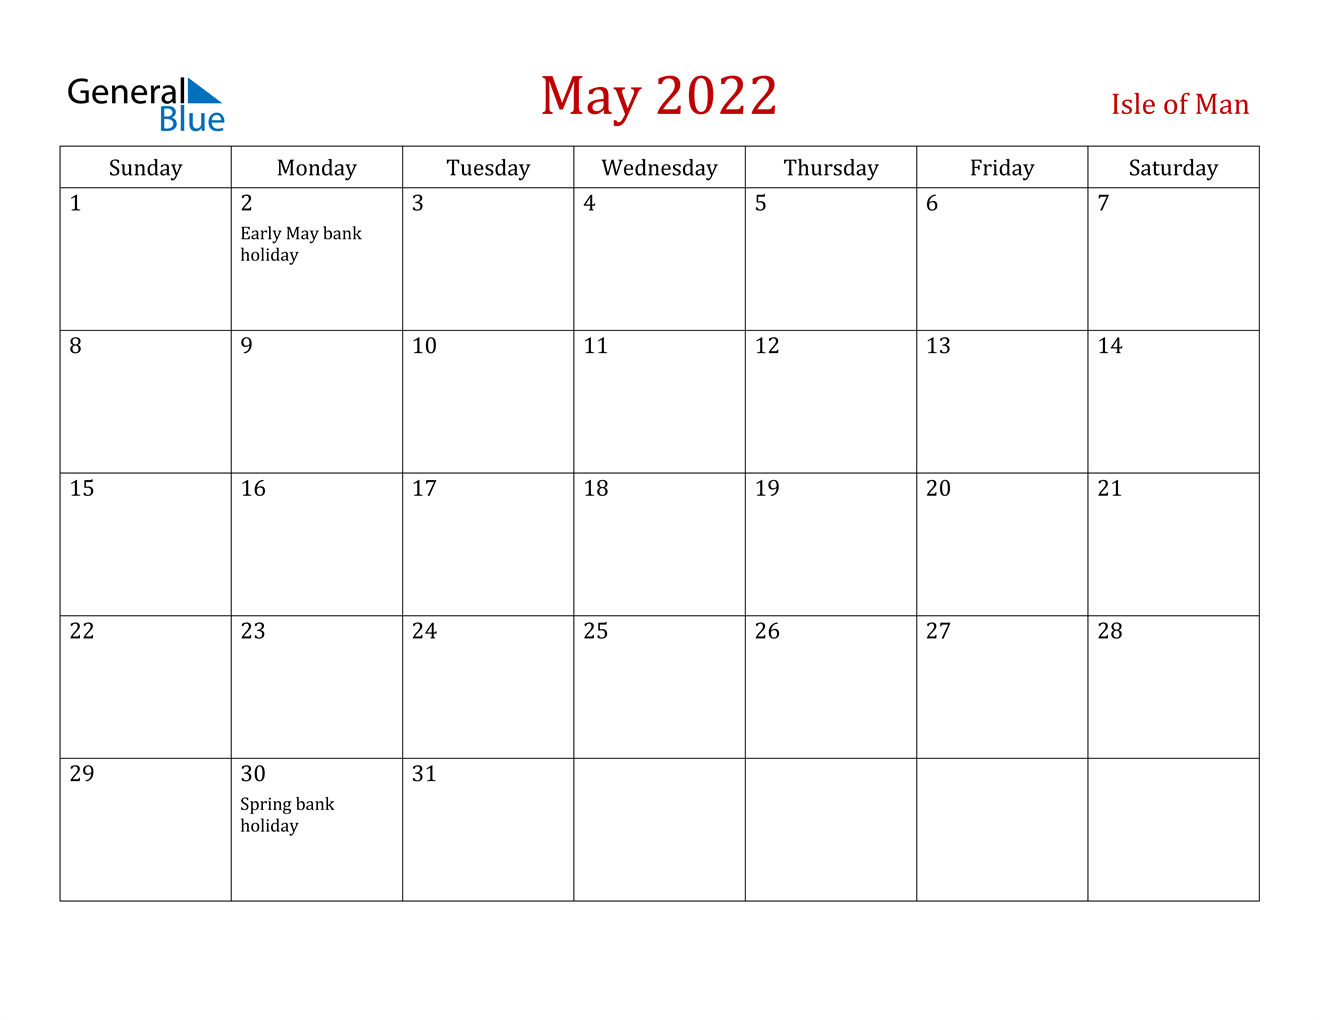 May 2022 Calendar - Isle Of Man